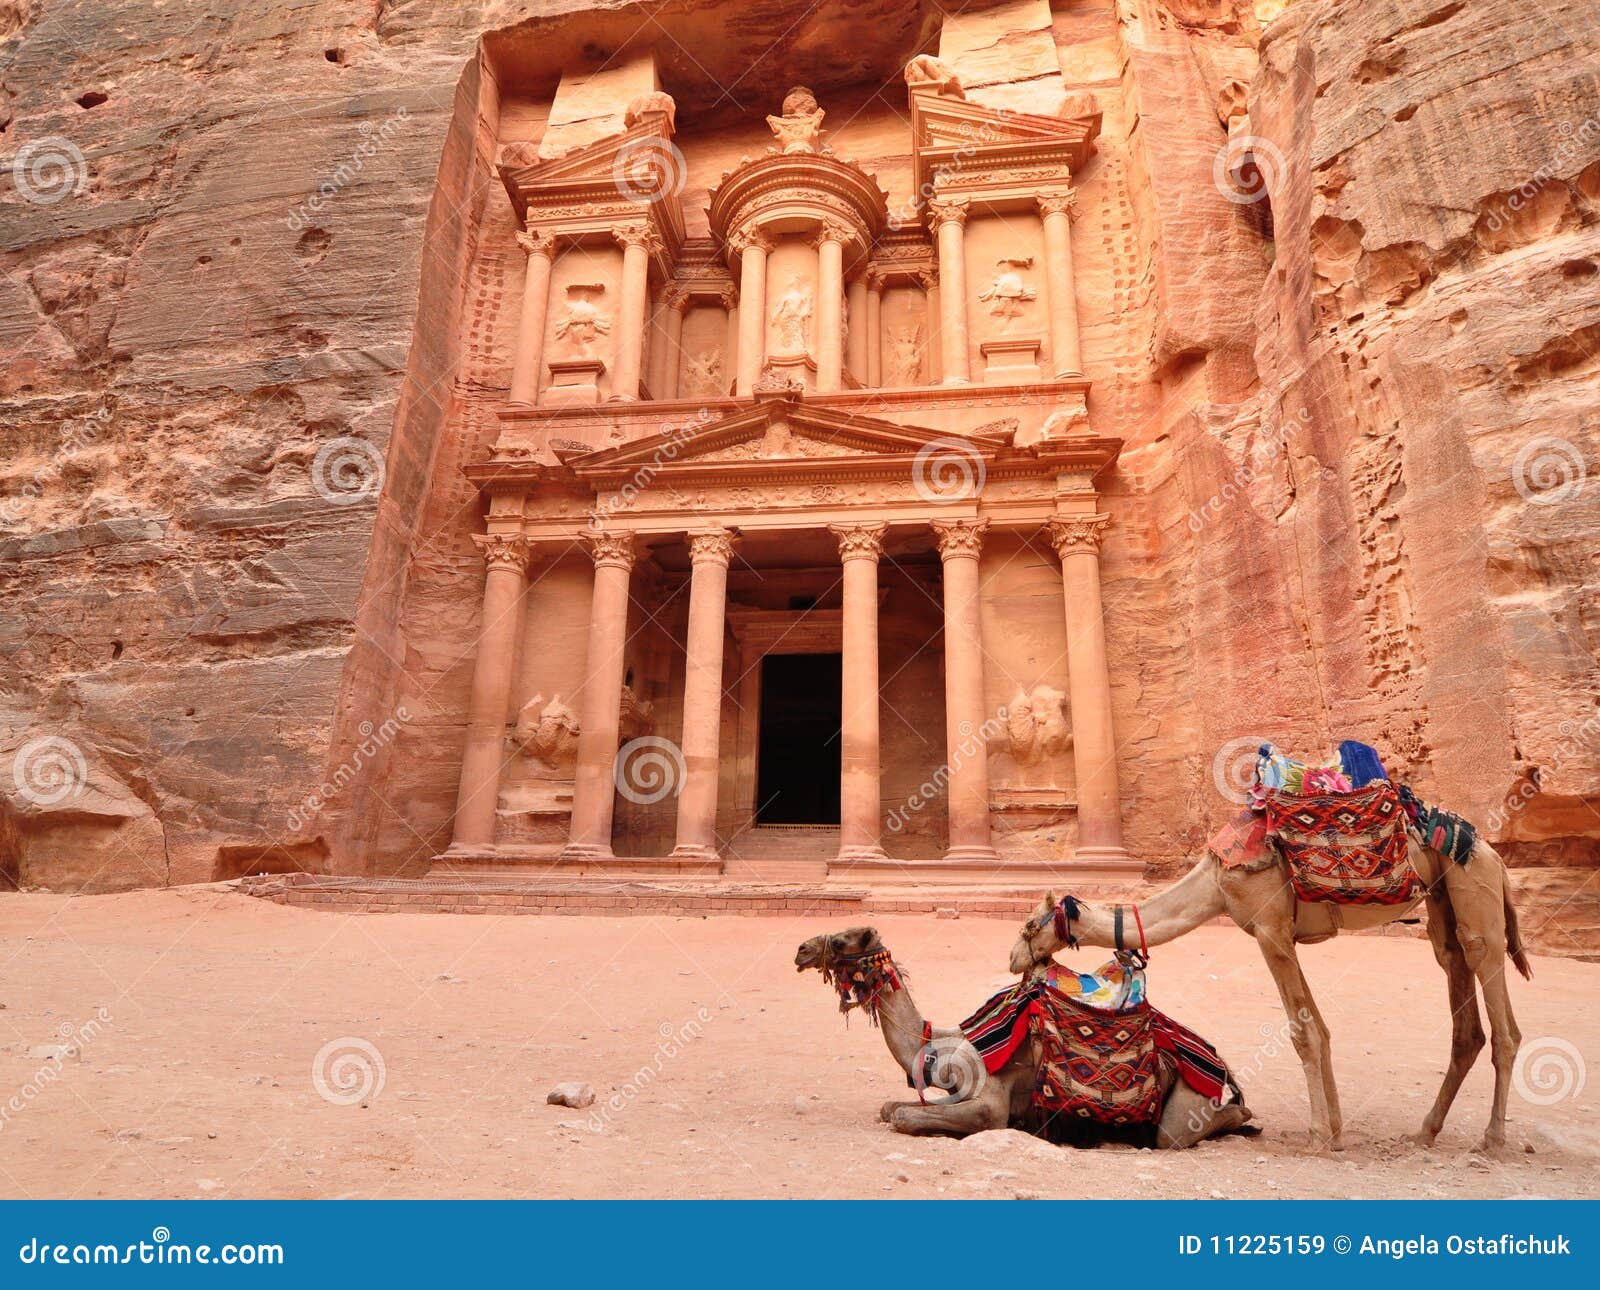 petra treasury and camels